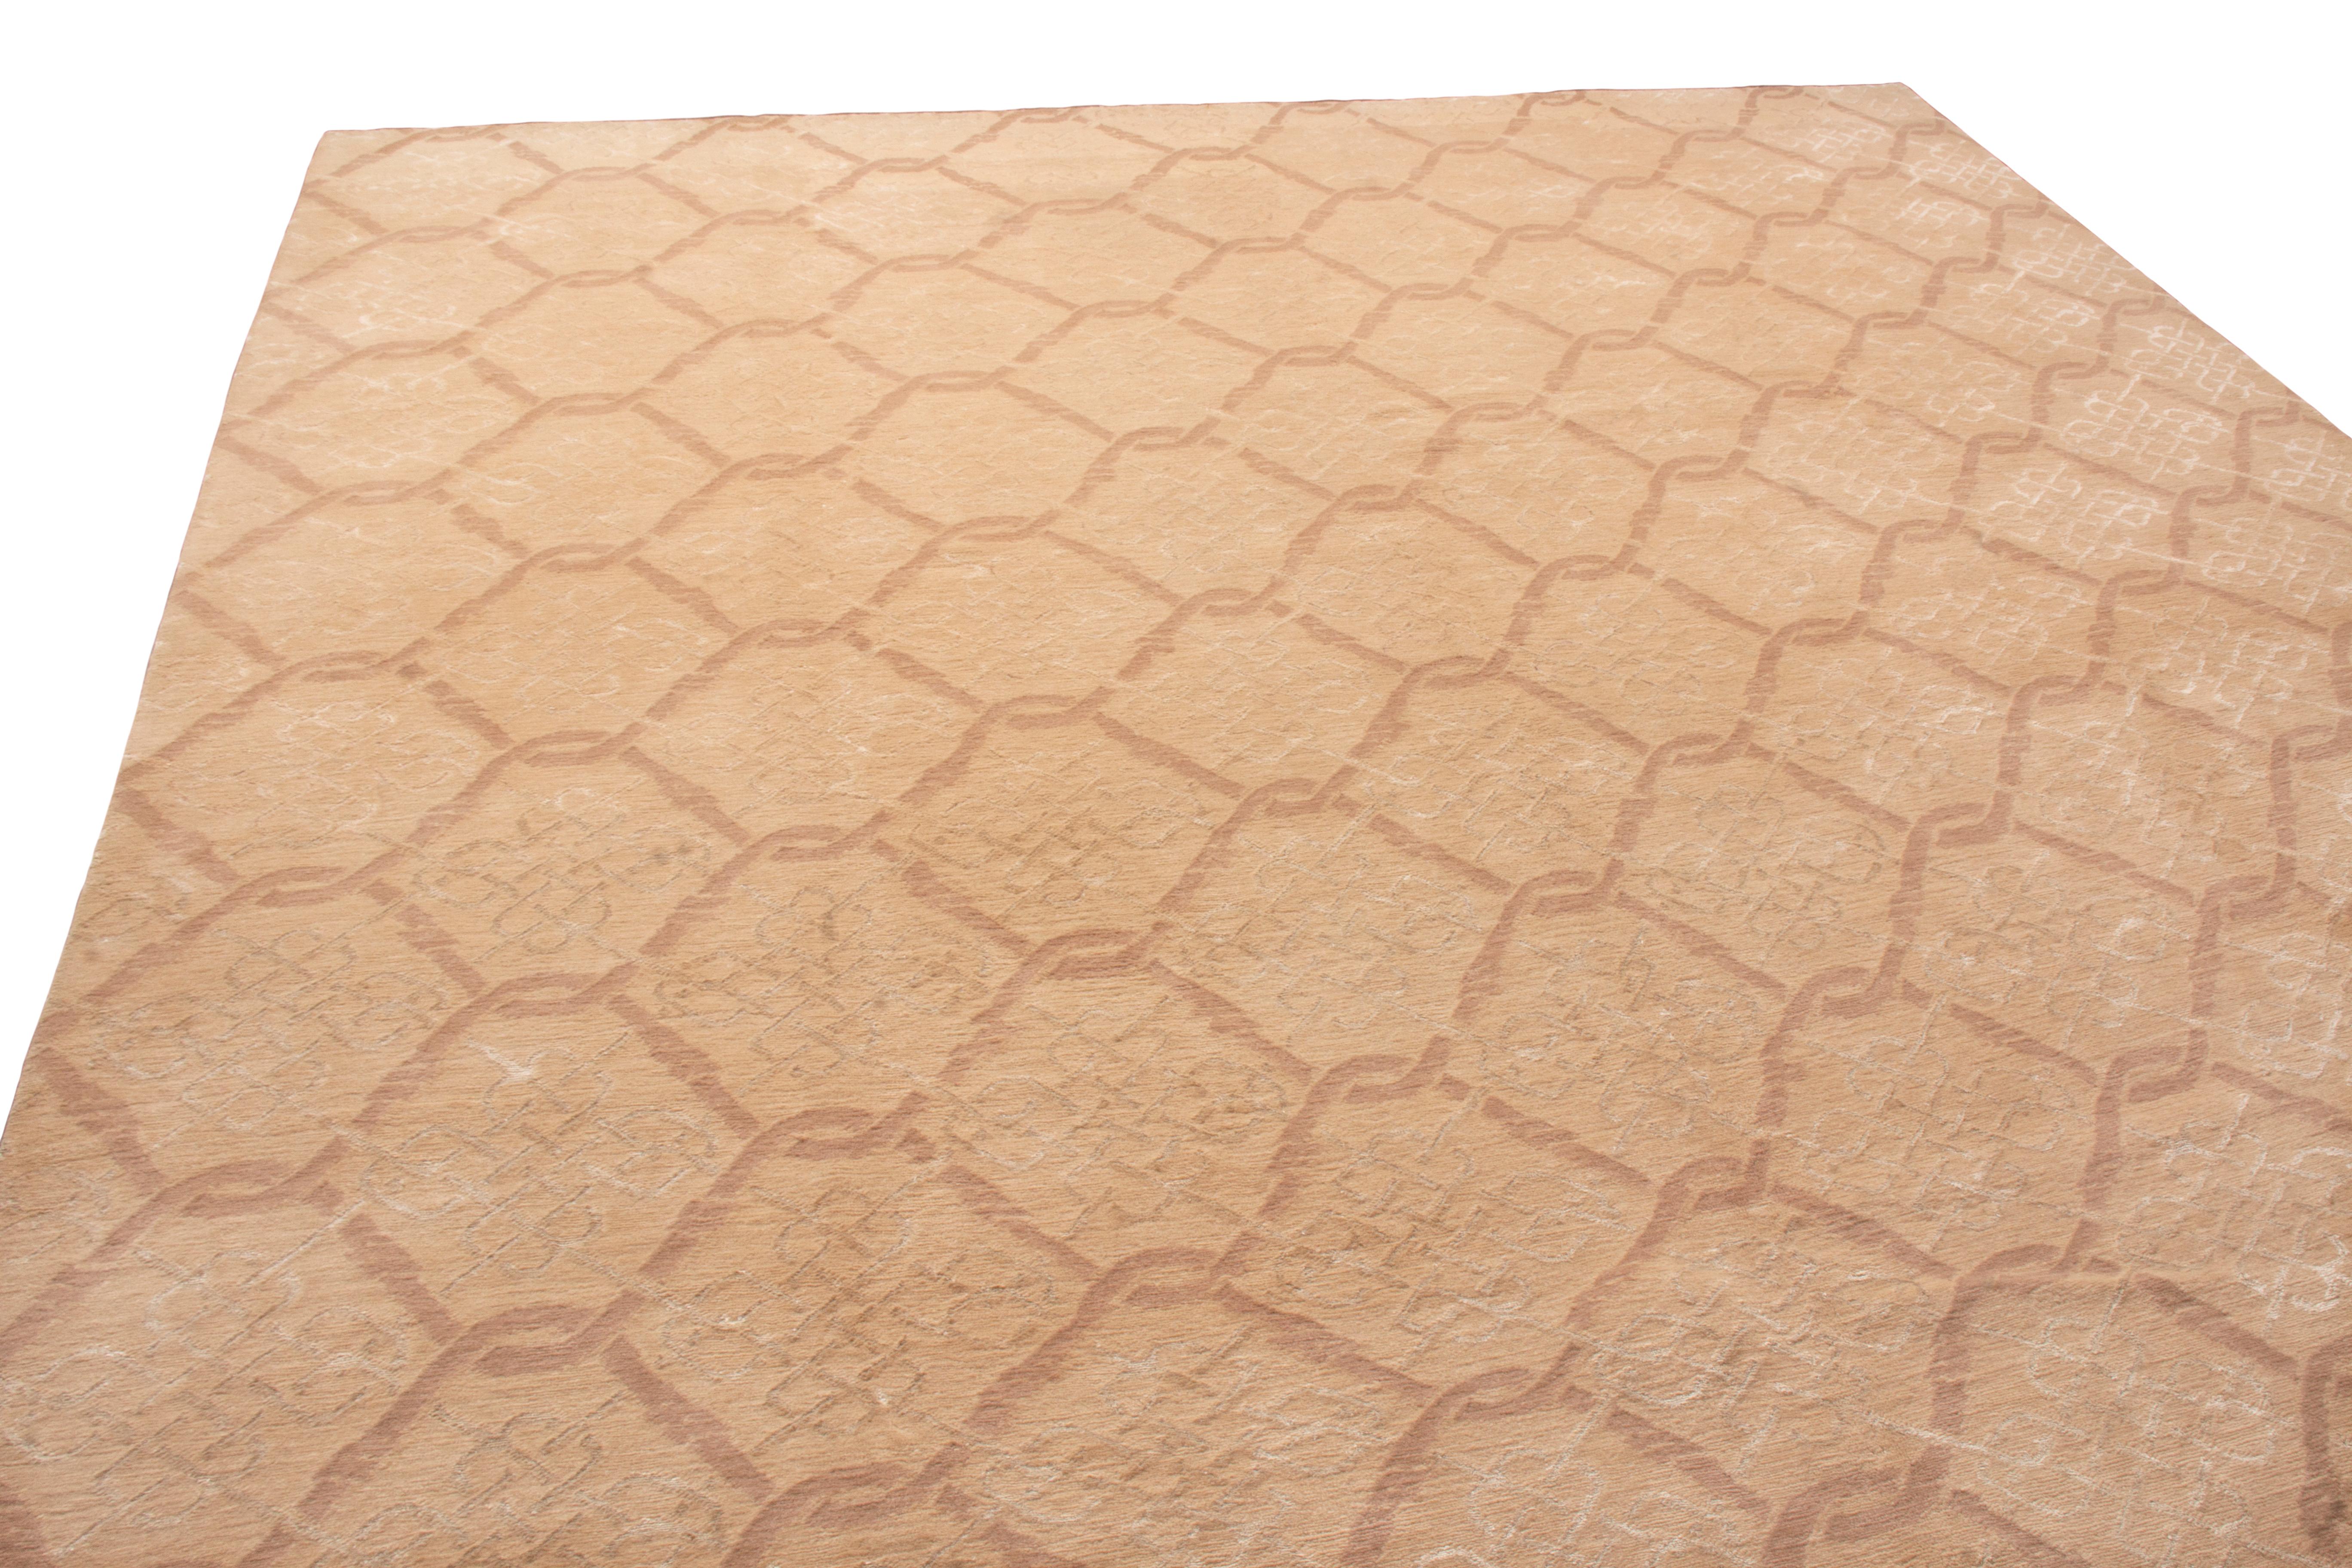 Originaire du Népal, ce tapis moderne en laine de transition présente un motif répétitif distingué, rarement vu dans les pièces plus récentes. Noués à la main dans une laine de haute qualité, les carreaux imbriqués de couleur beige et brune